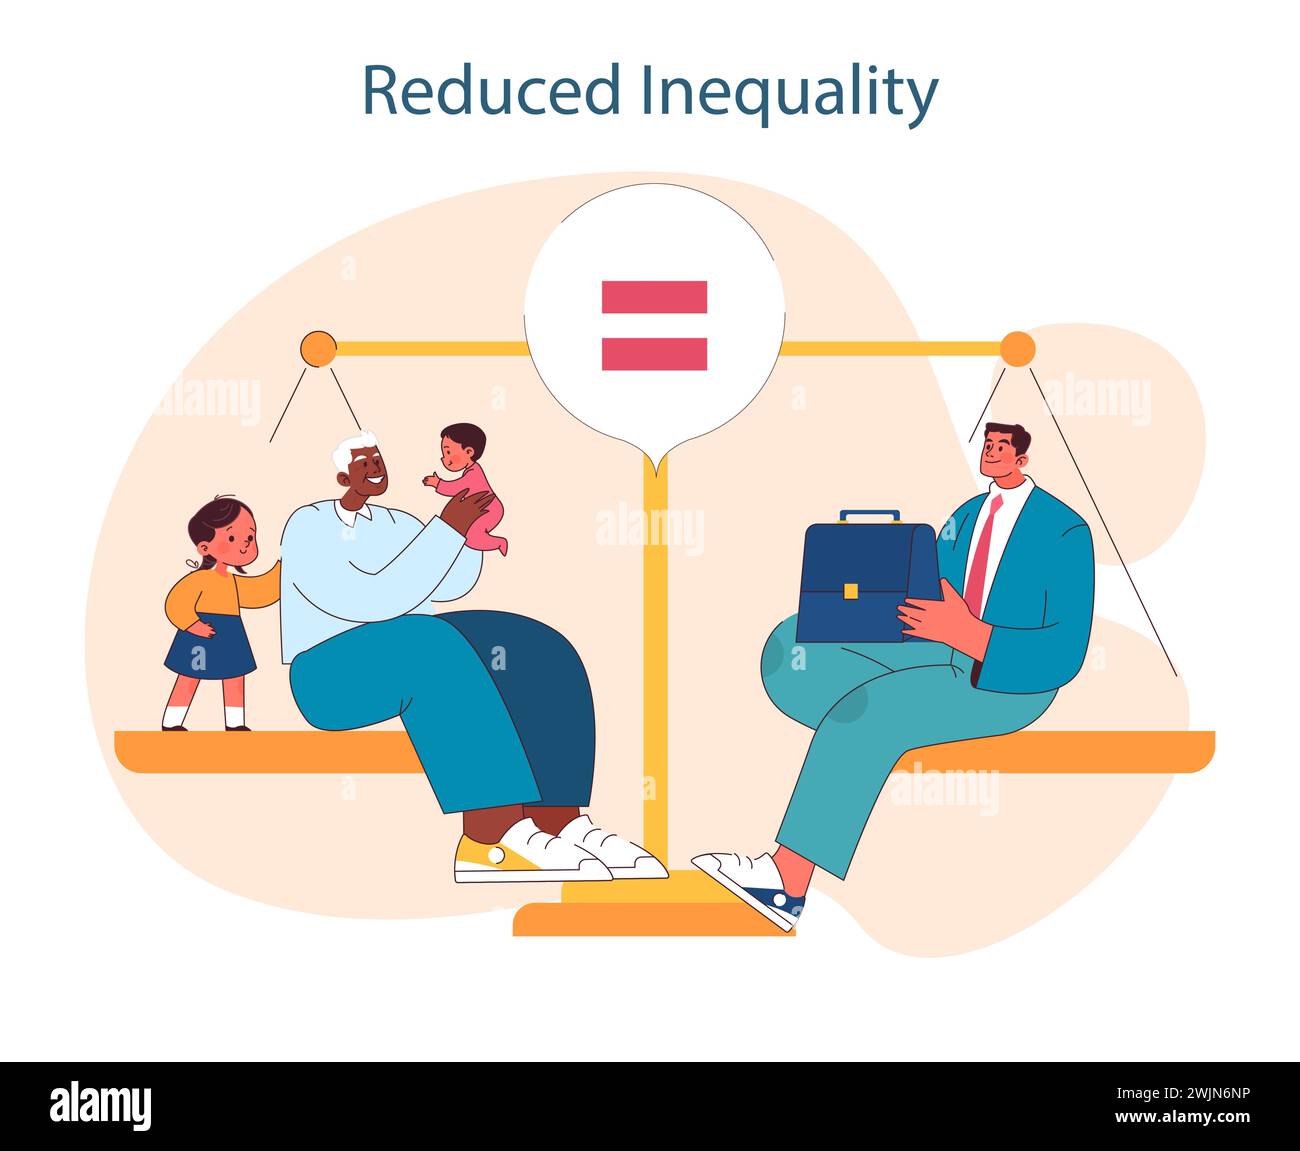 Verringerung Der Ungleichheit. Ausgewogene Skalen zwischen verschiedenen sozialen Gruppen im Hinblick auf Gleichheit und Inklusion. Chancengleichheit für alle. Illustration des flachen Vektors Stock Vektor